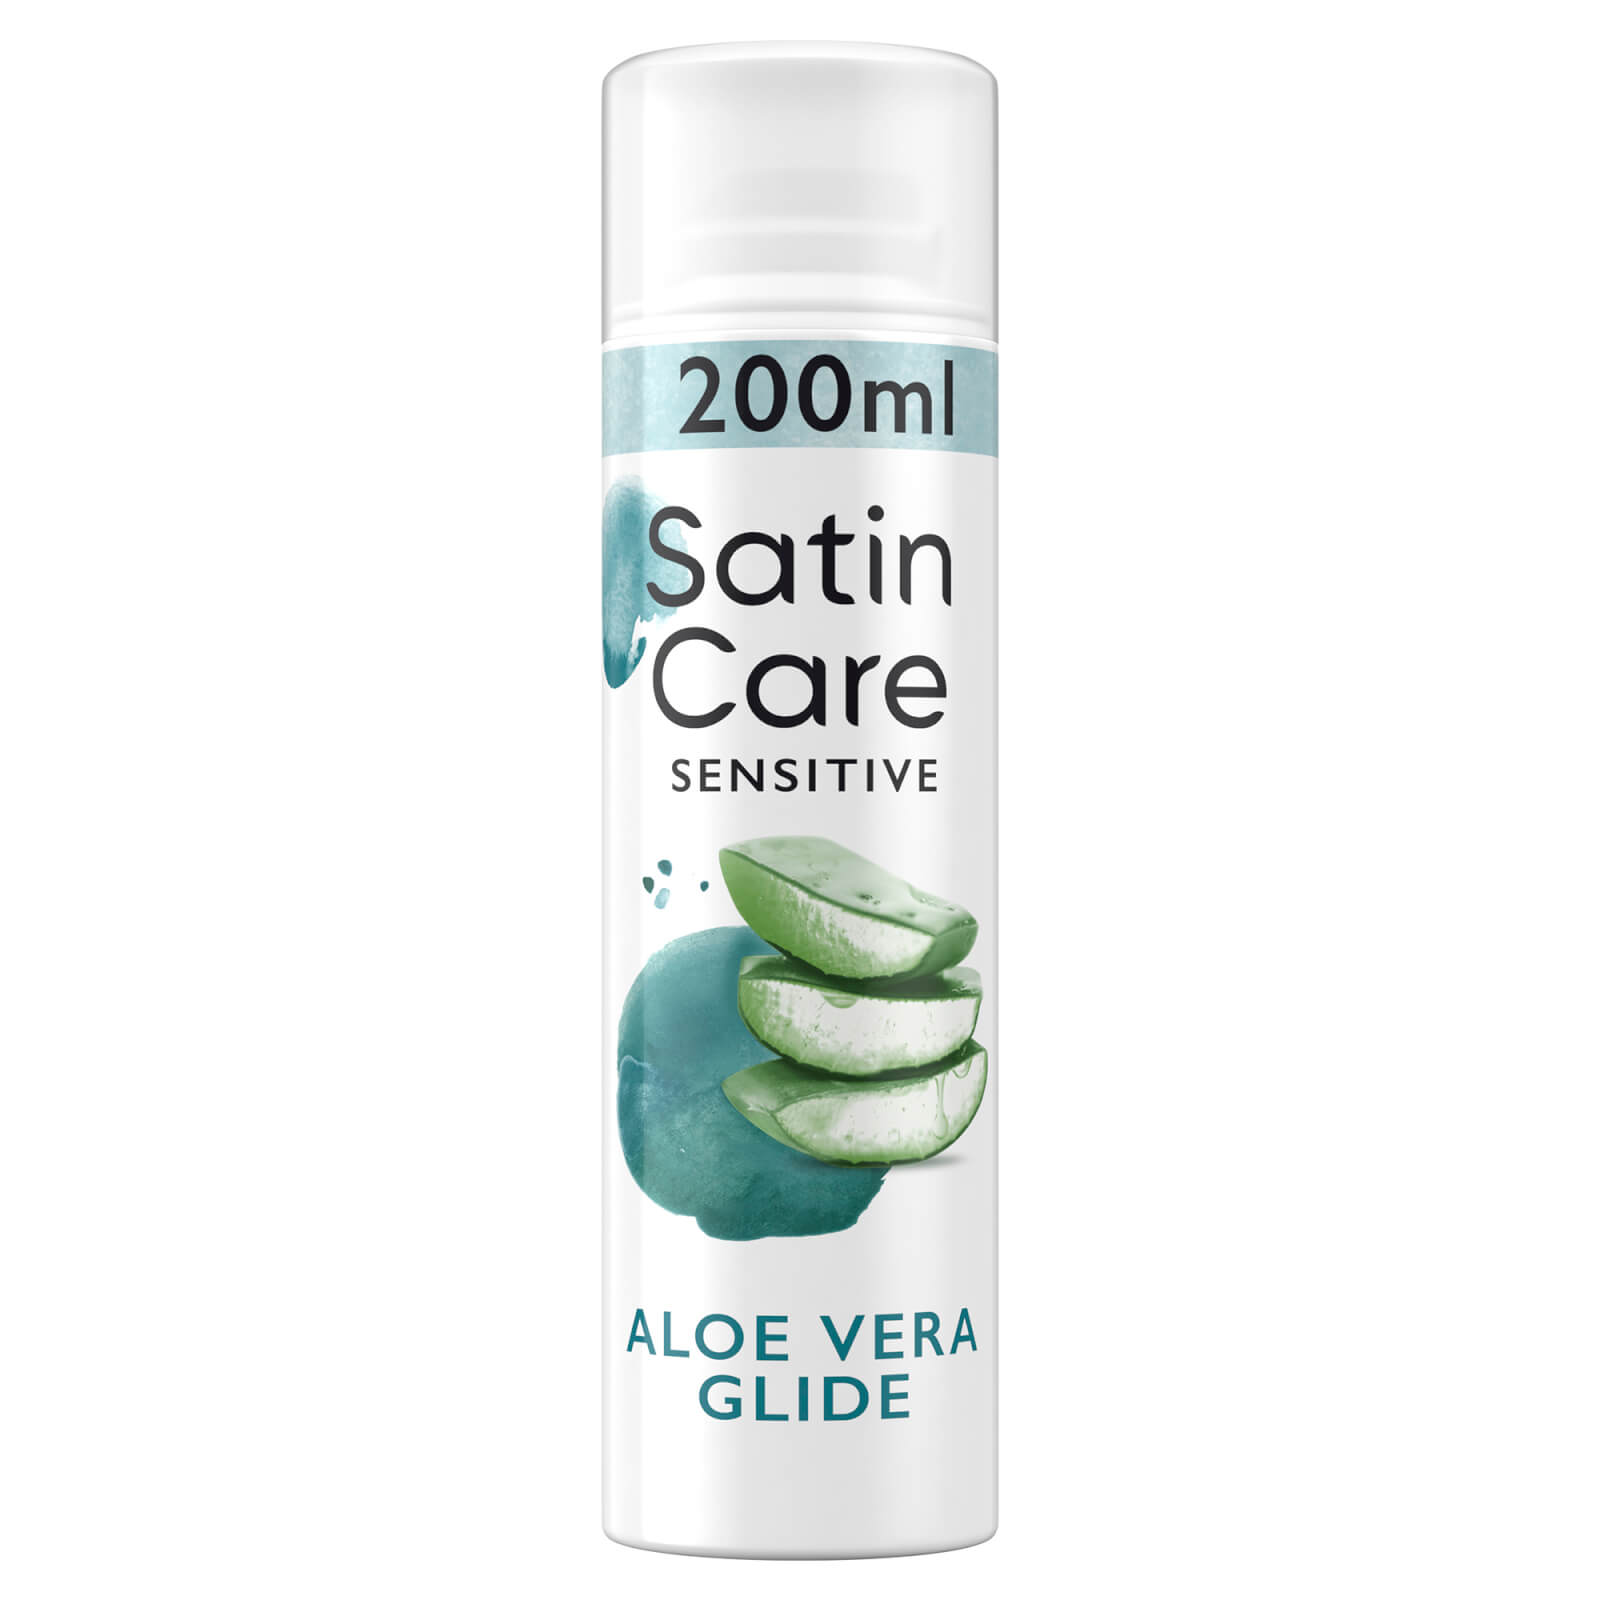 Satin Care Sensitive Aloe Vera Glide Shaving Gel 200ml Multi